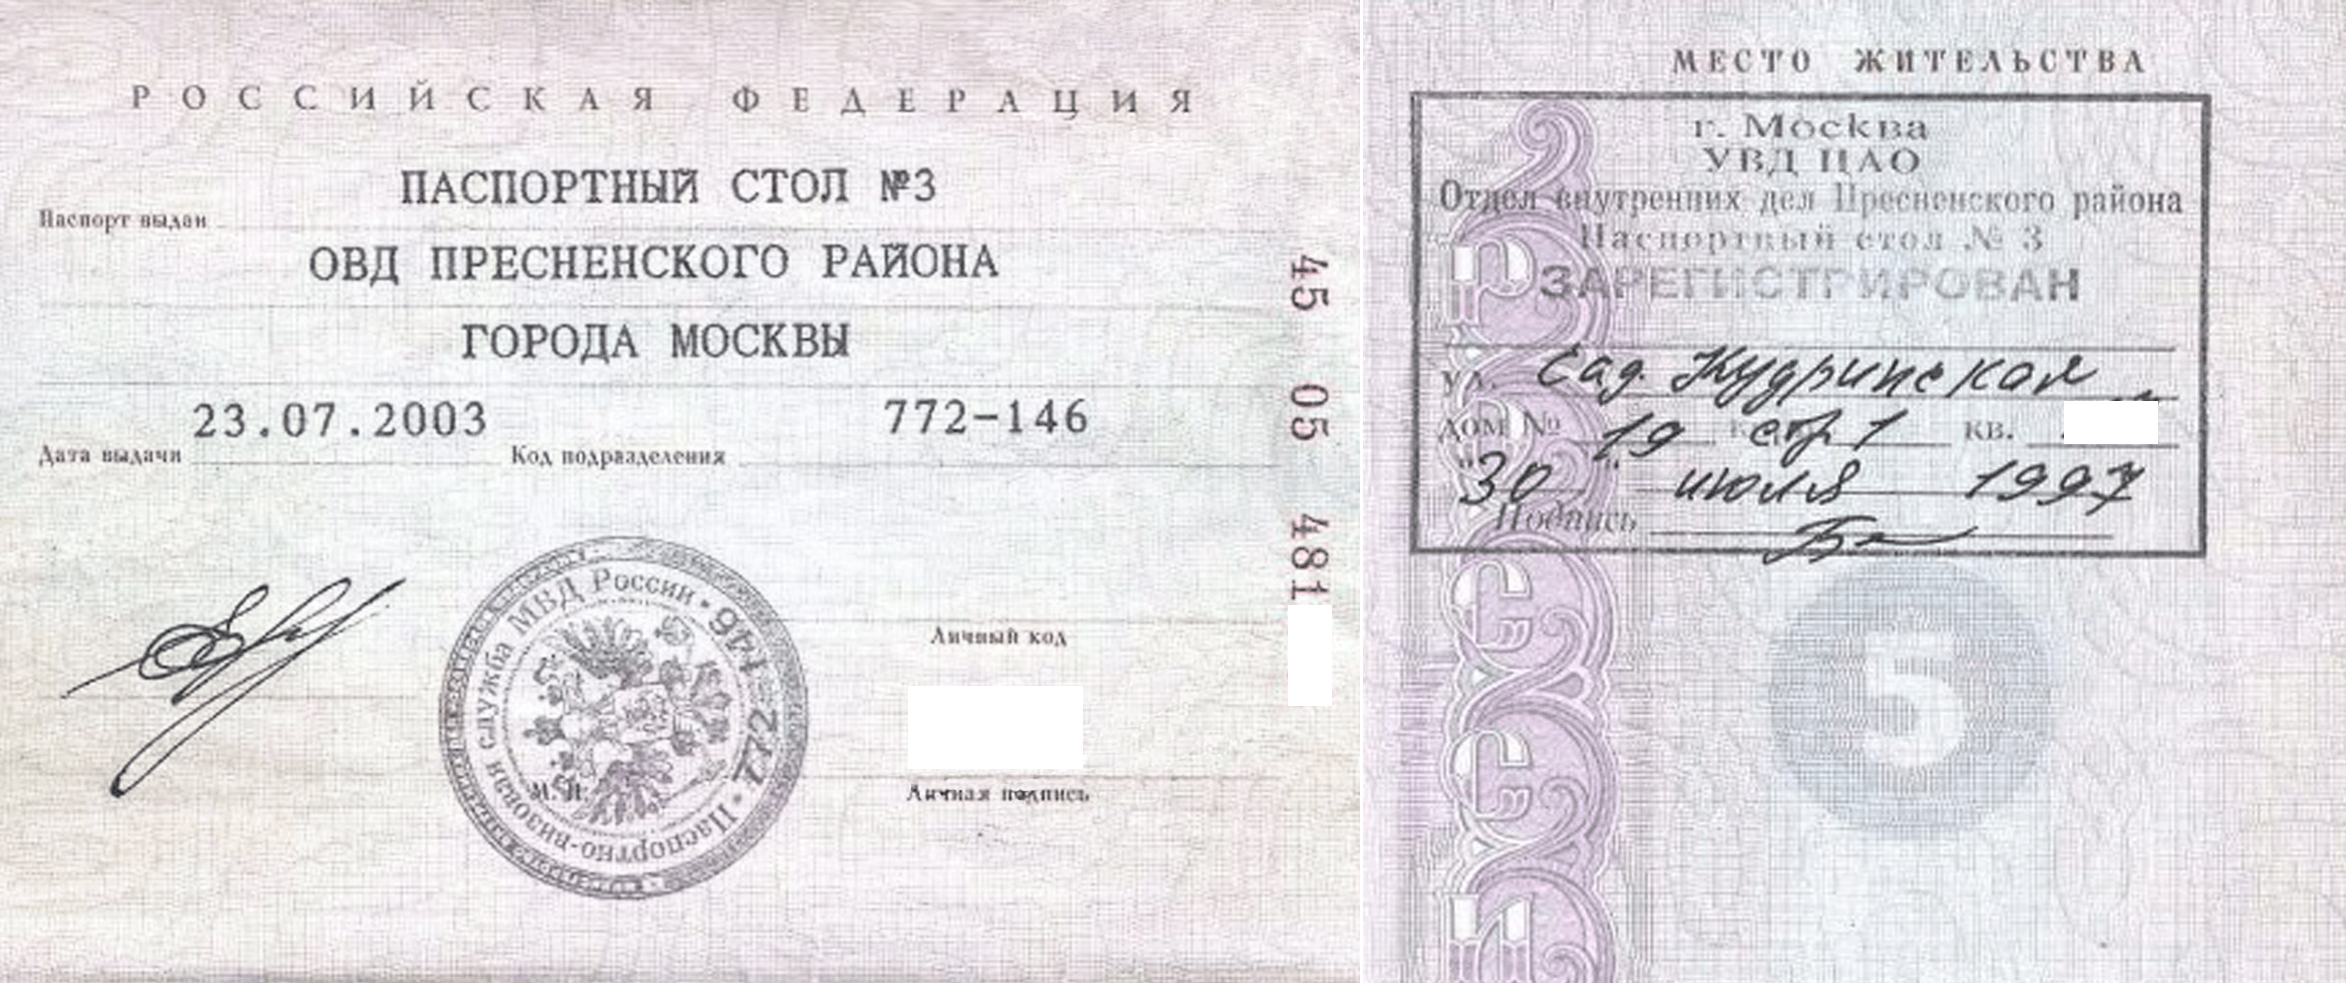 Оуфмс республика. Паспортные данные Москва с пропиской.